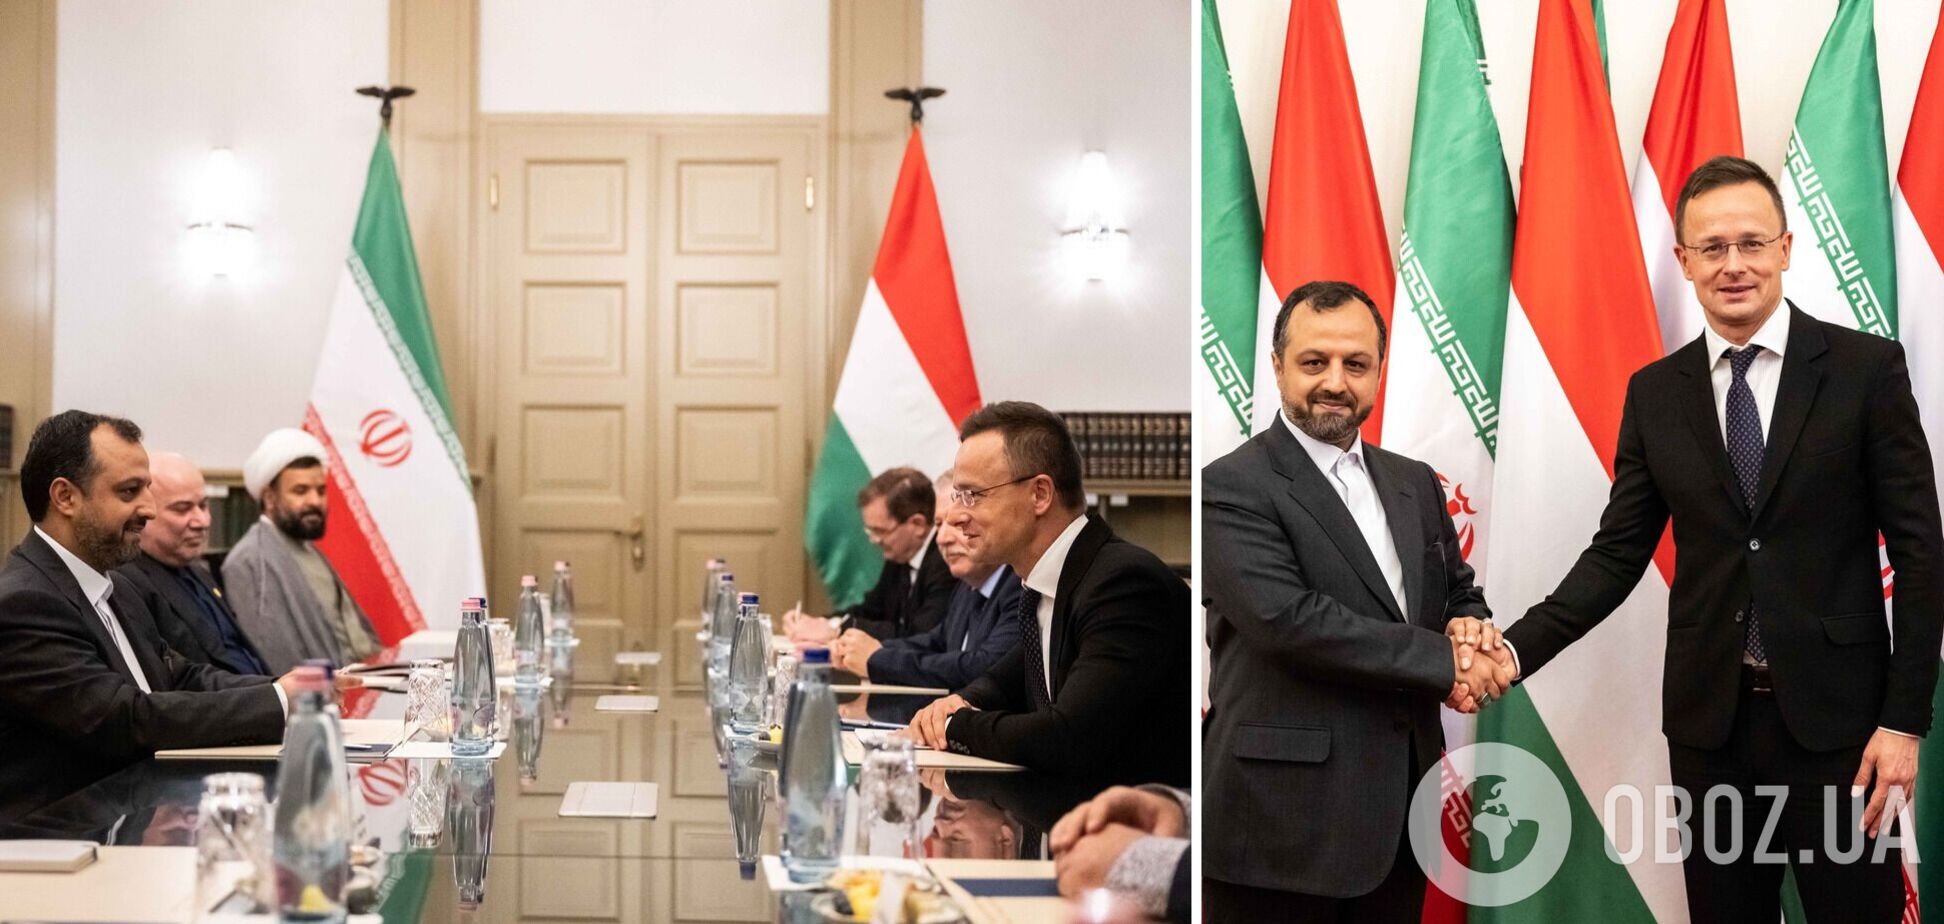 Венгрия официально объявила о начале экономического сотрудничества с Ираном